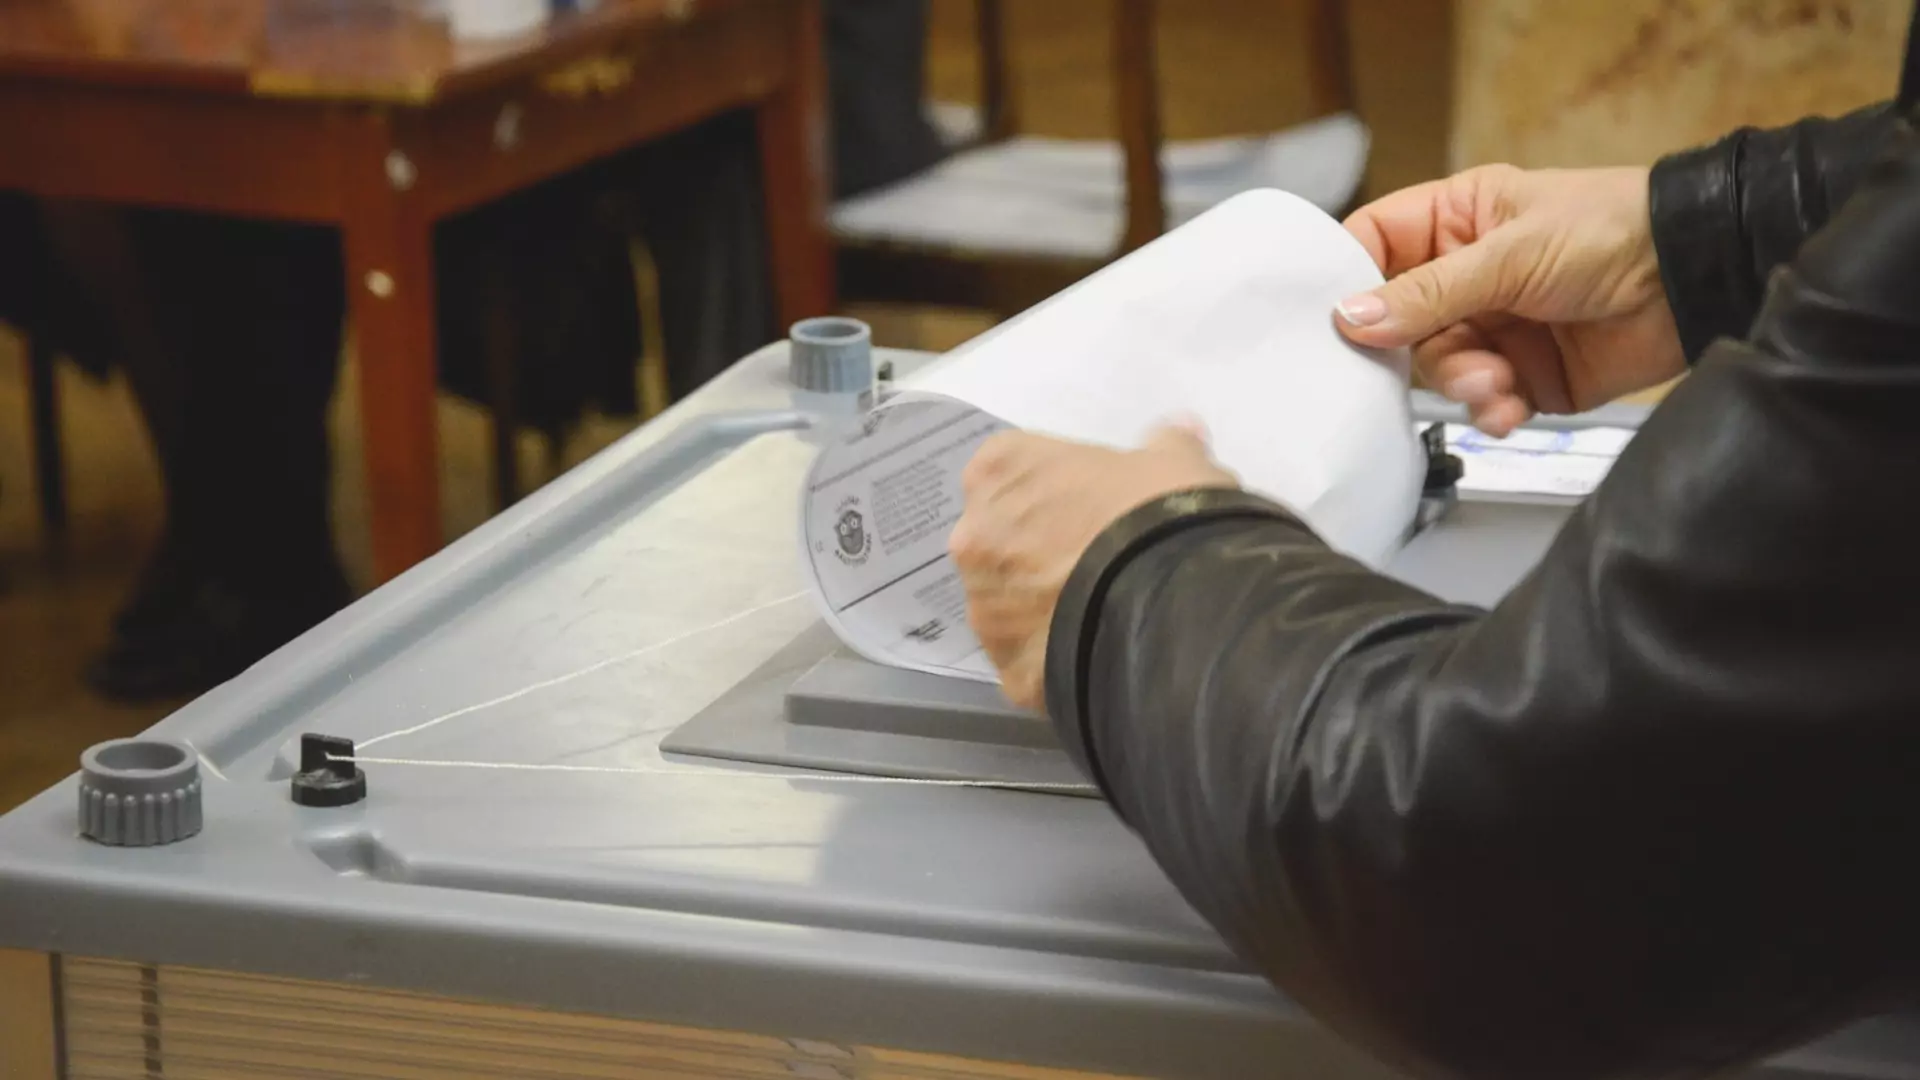 Явка на выборы в гордуму Екатеринбурга в первый день к 15.00 составила менее 5%